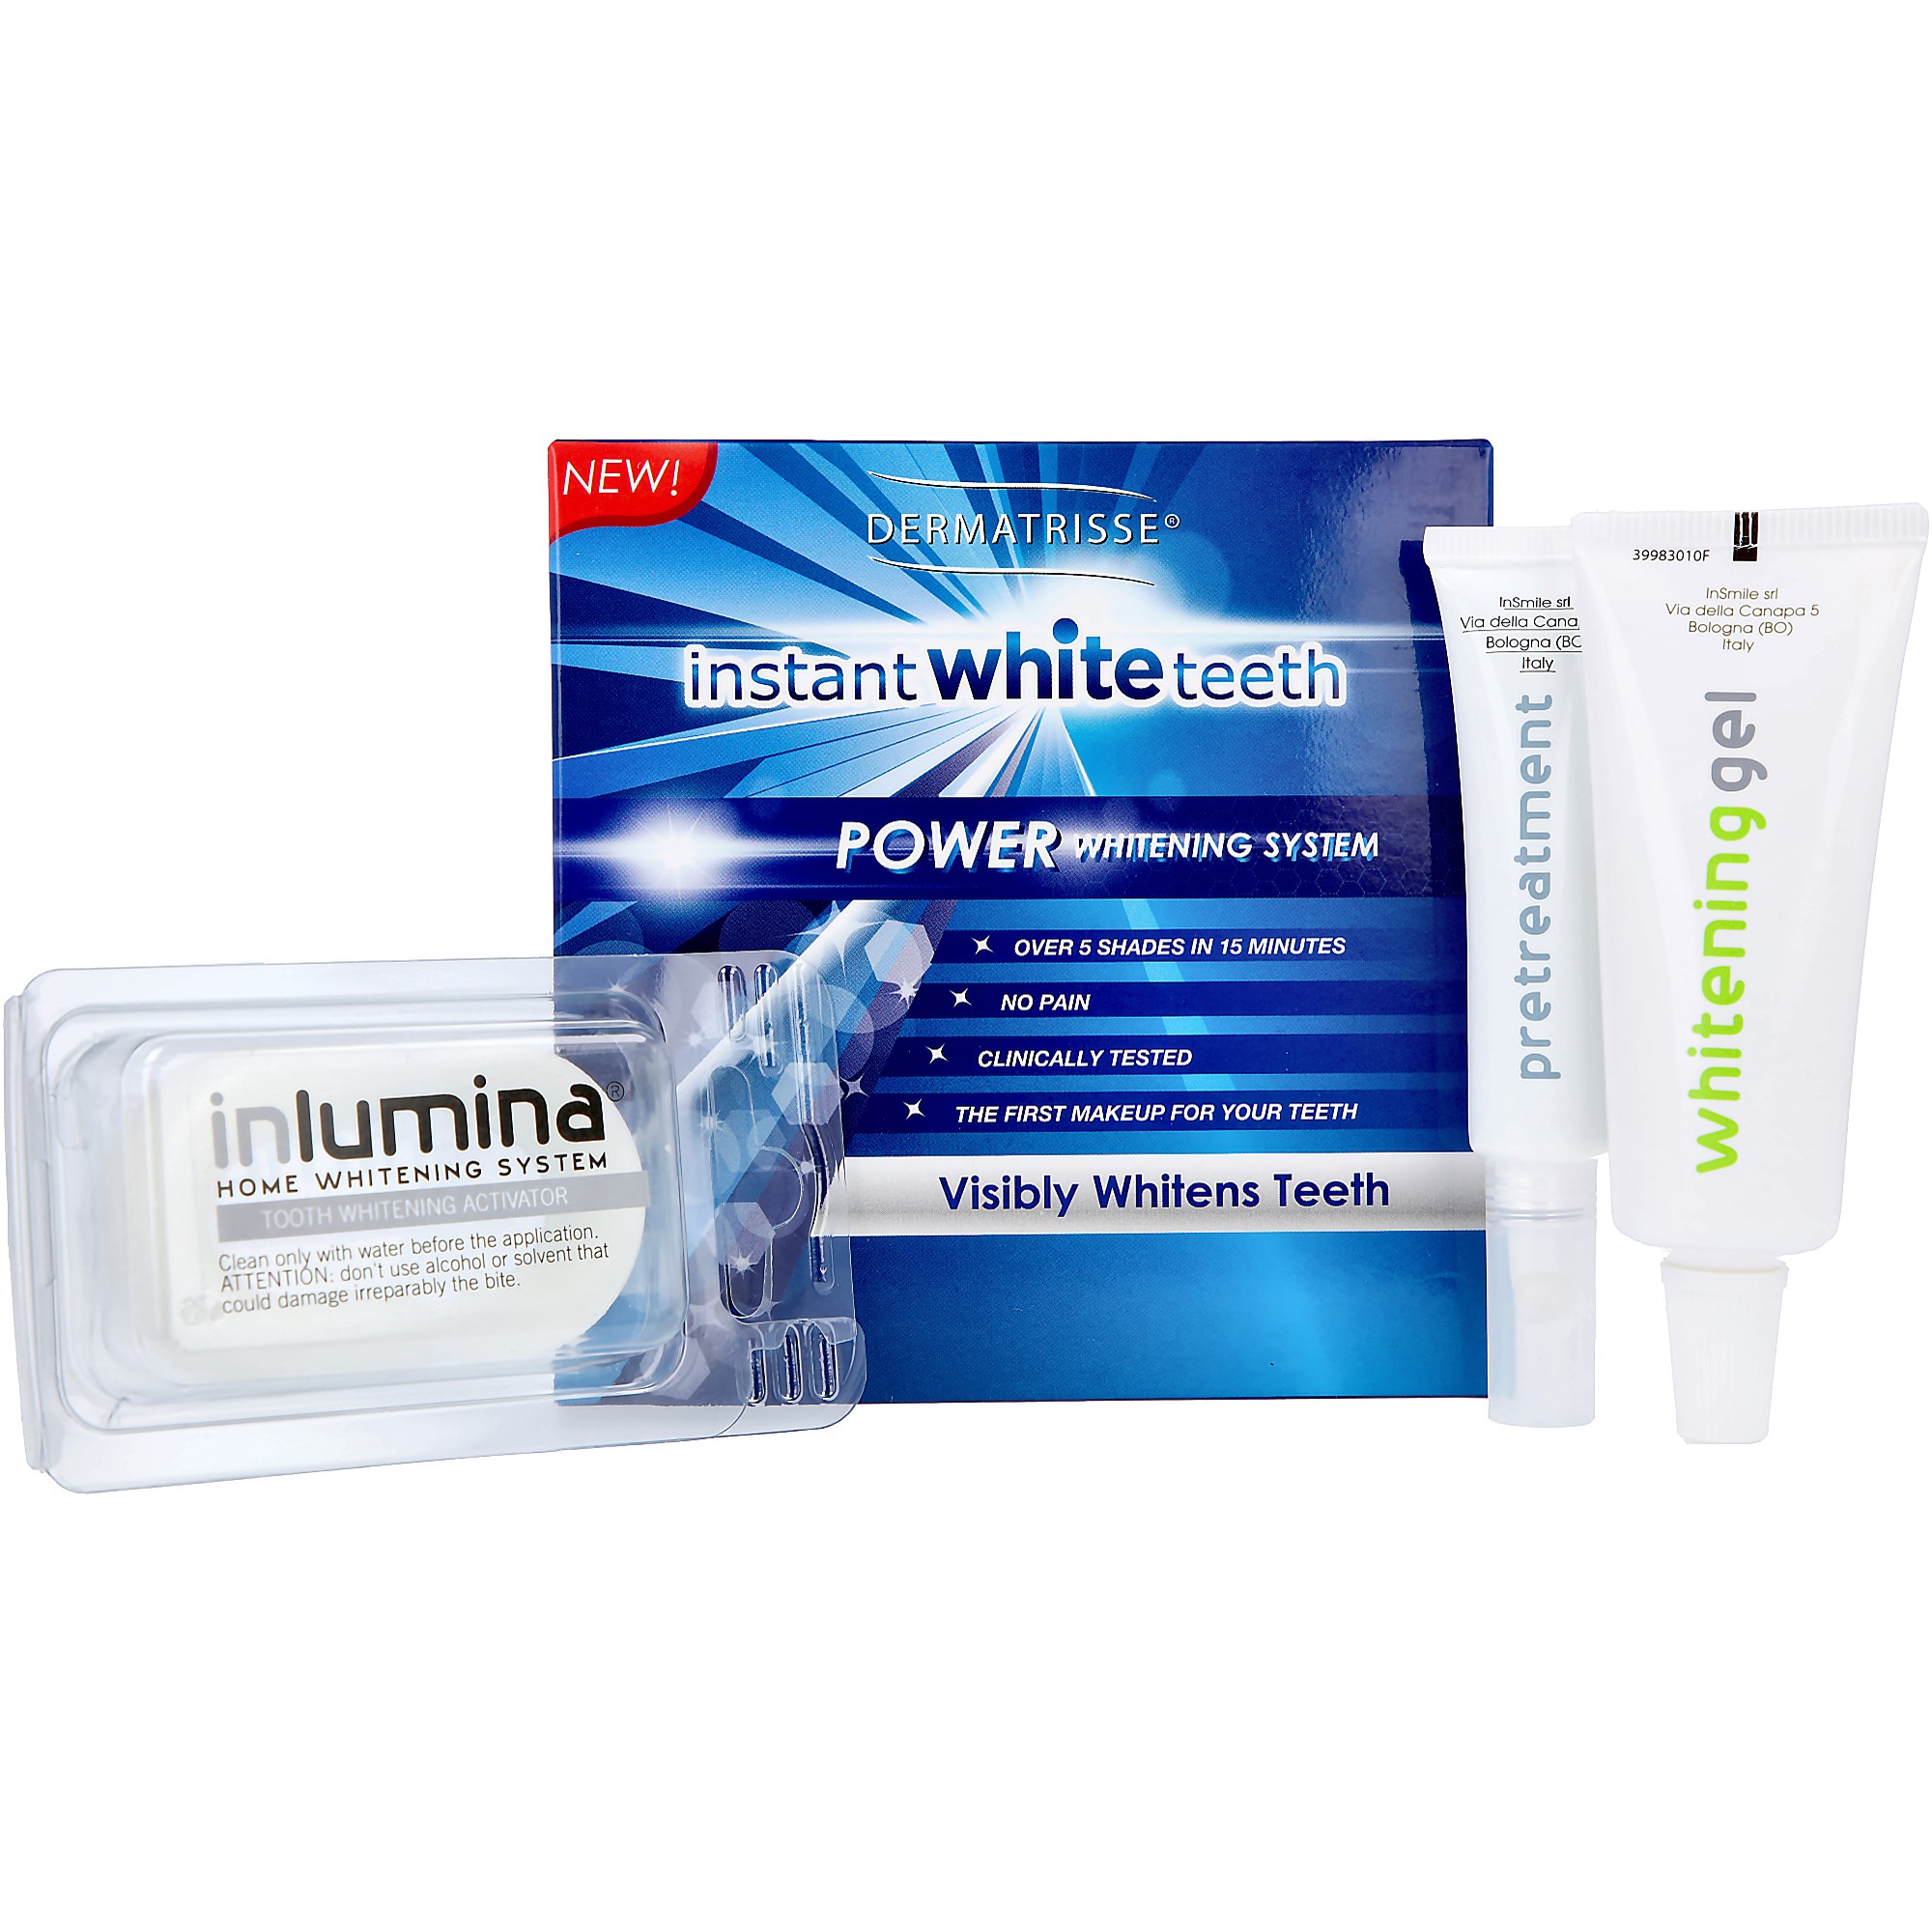 Bilde av Dermatrisse Instant White Teeth Kit